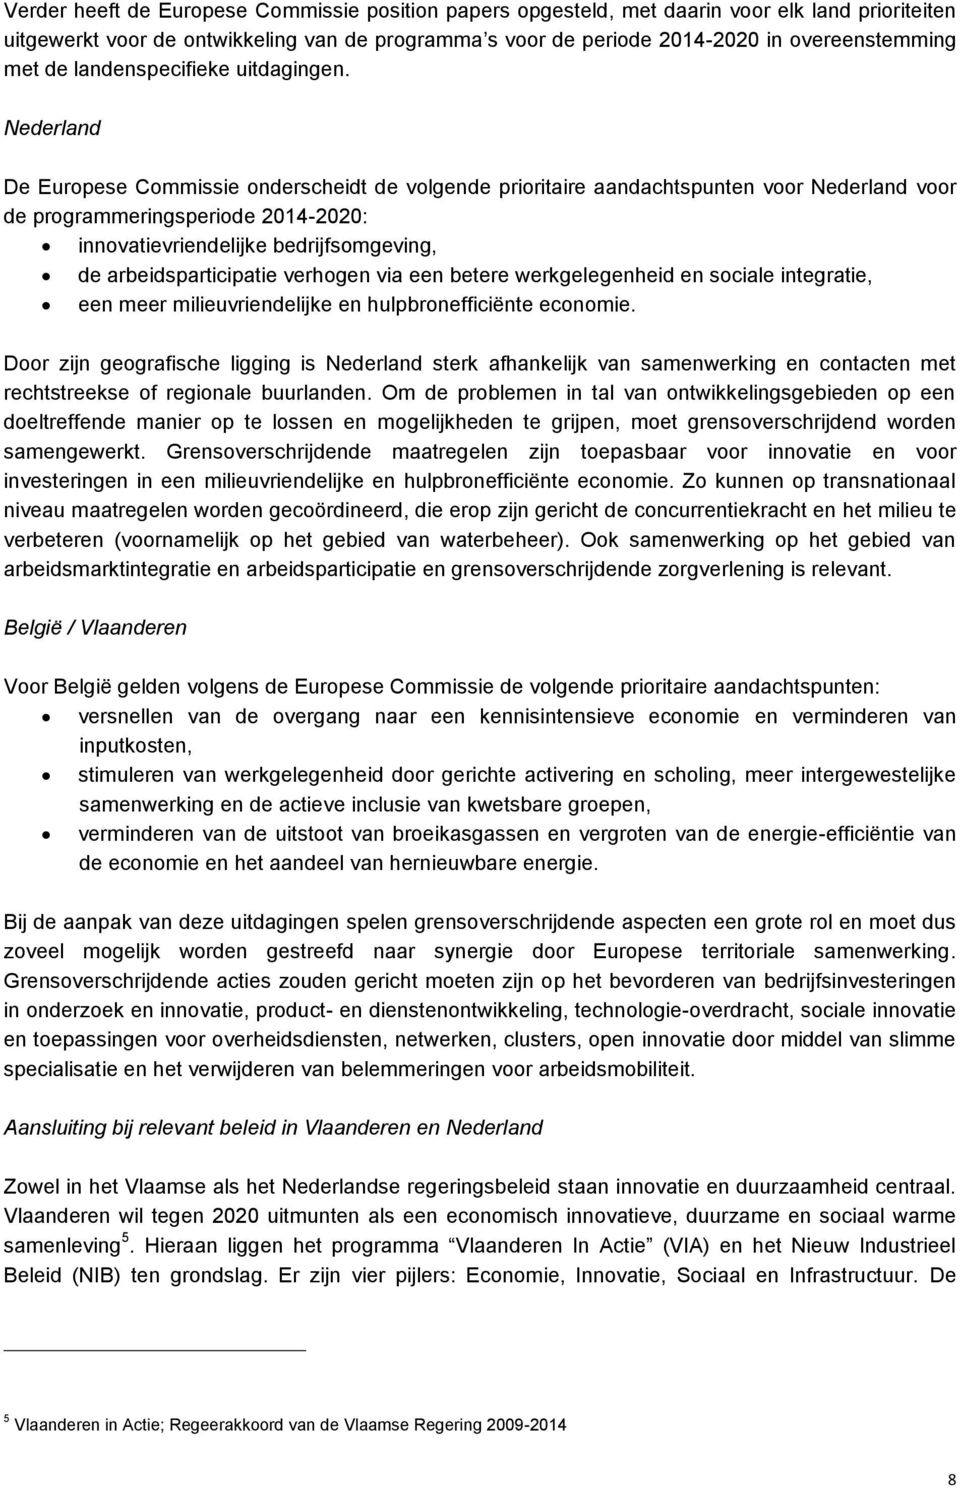 Nederland De Europese Commissie onderscheidt de volgende prioritaire aandachtspunten voor Nederland voor de programmeringsperiode 2014-2020: innovatievriendelijke bedrijfsomgeving, de